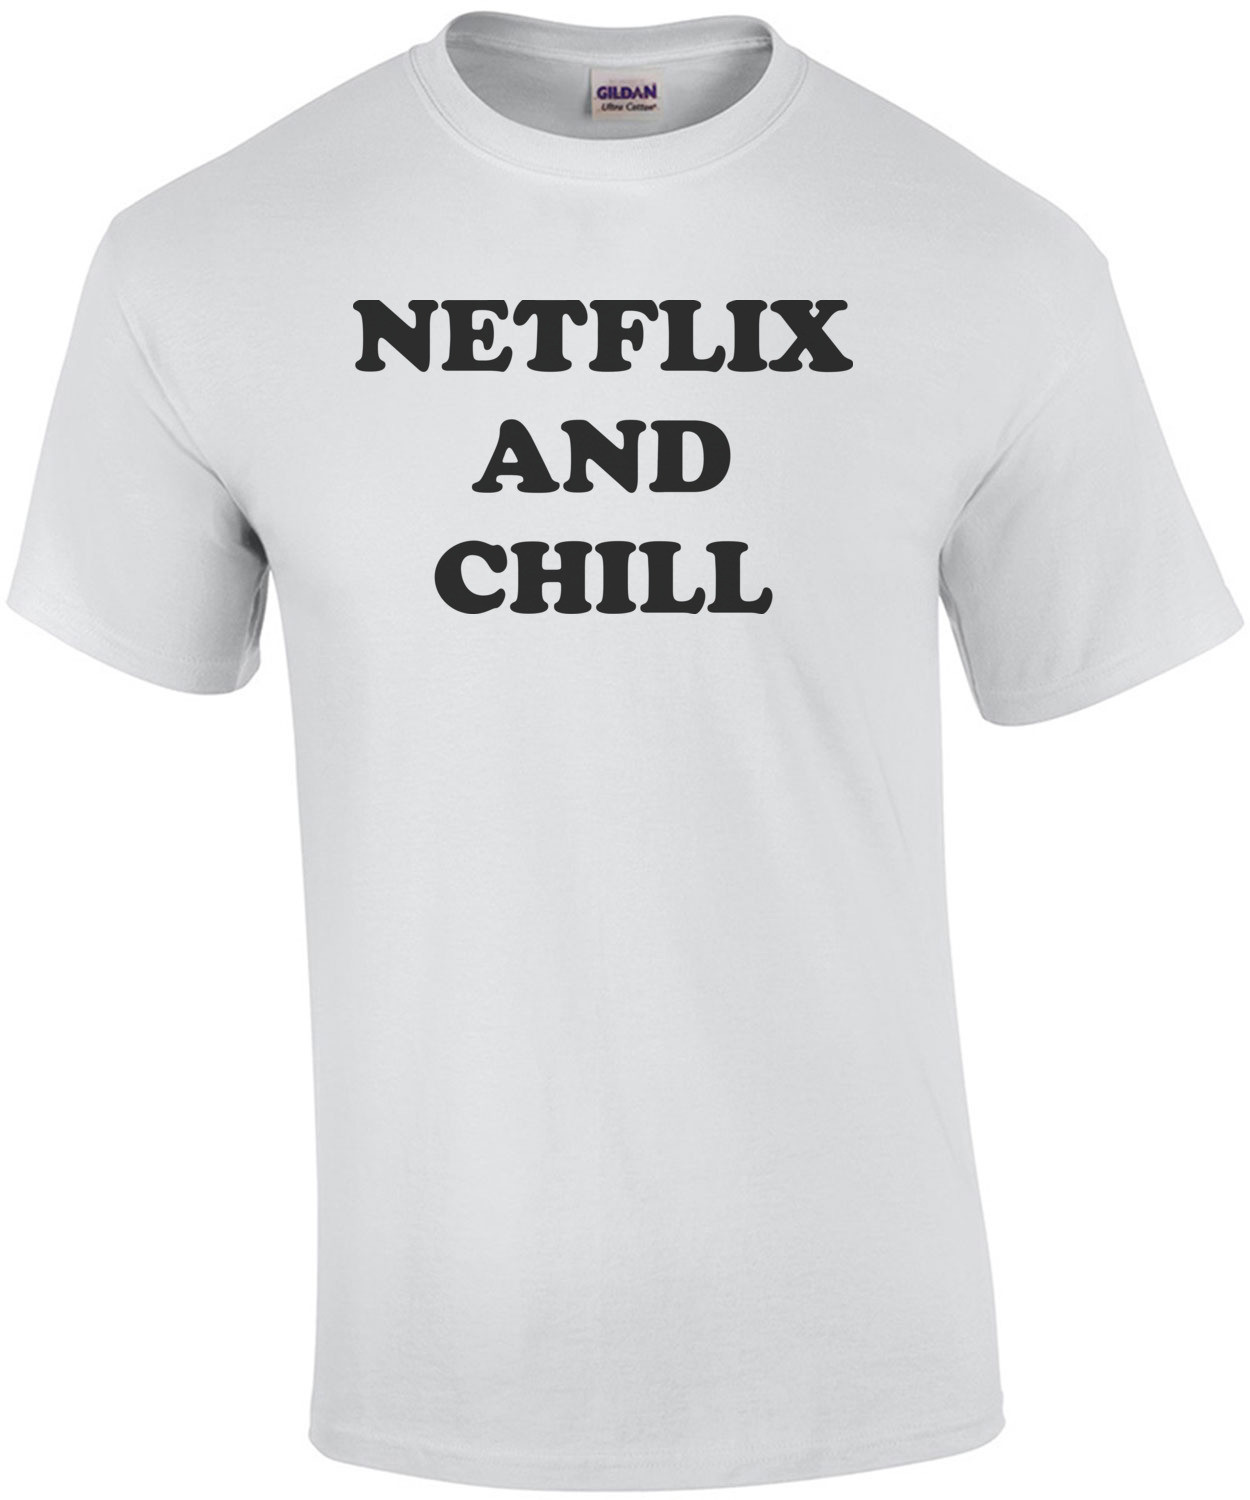 NETFLIX AND CHILL Shirt